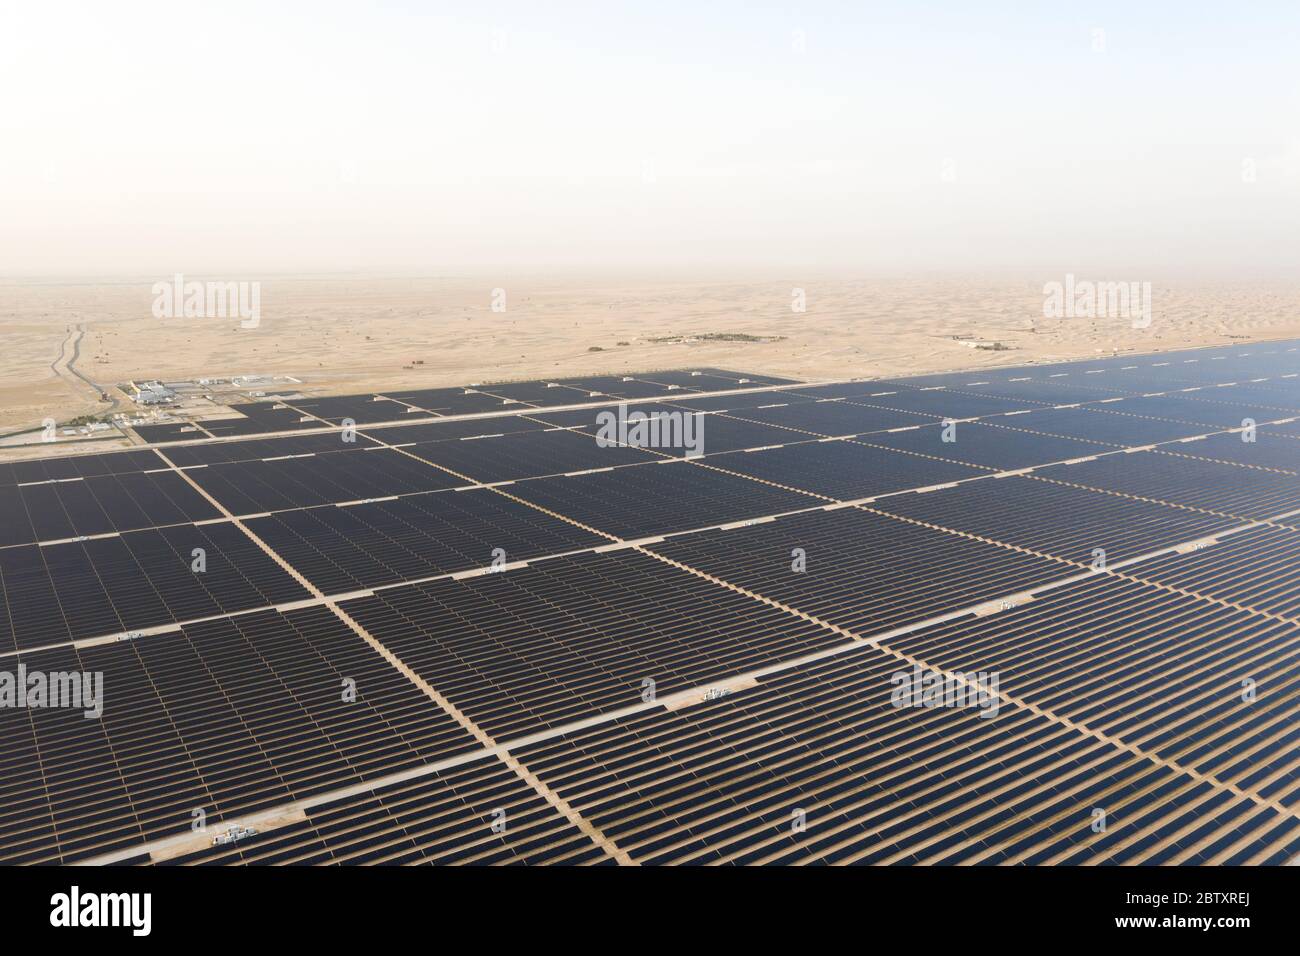 Vue aérienne d'un paysage avec une ferme de panneaux solaires photovoltaïques générant une énergie renouvelable durable dans une centrale électrique désertique. Banque D'Images